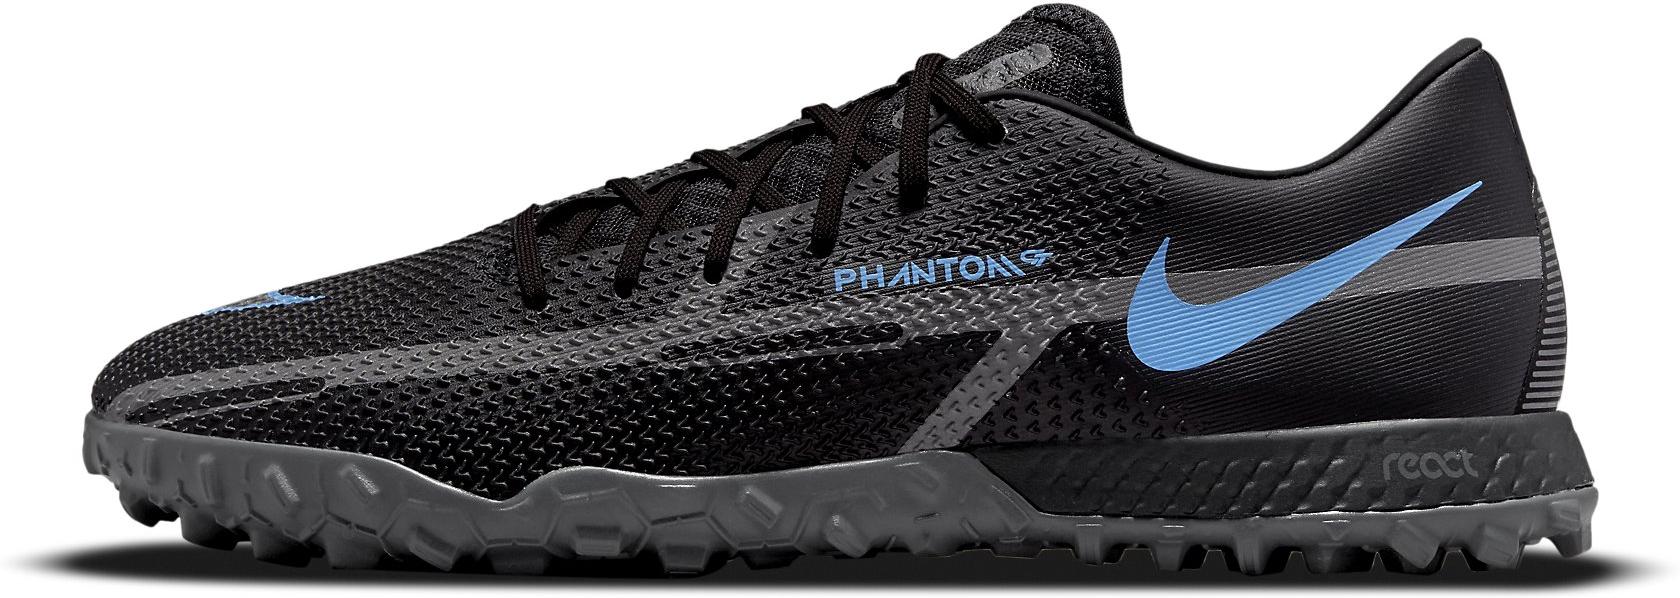 Voetbalschoenen Nike Phantom GT2 Pro TF Turf Soccer Shoe